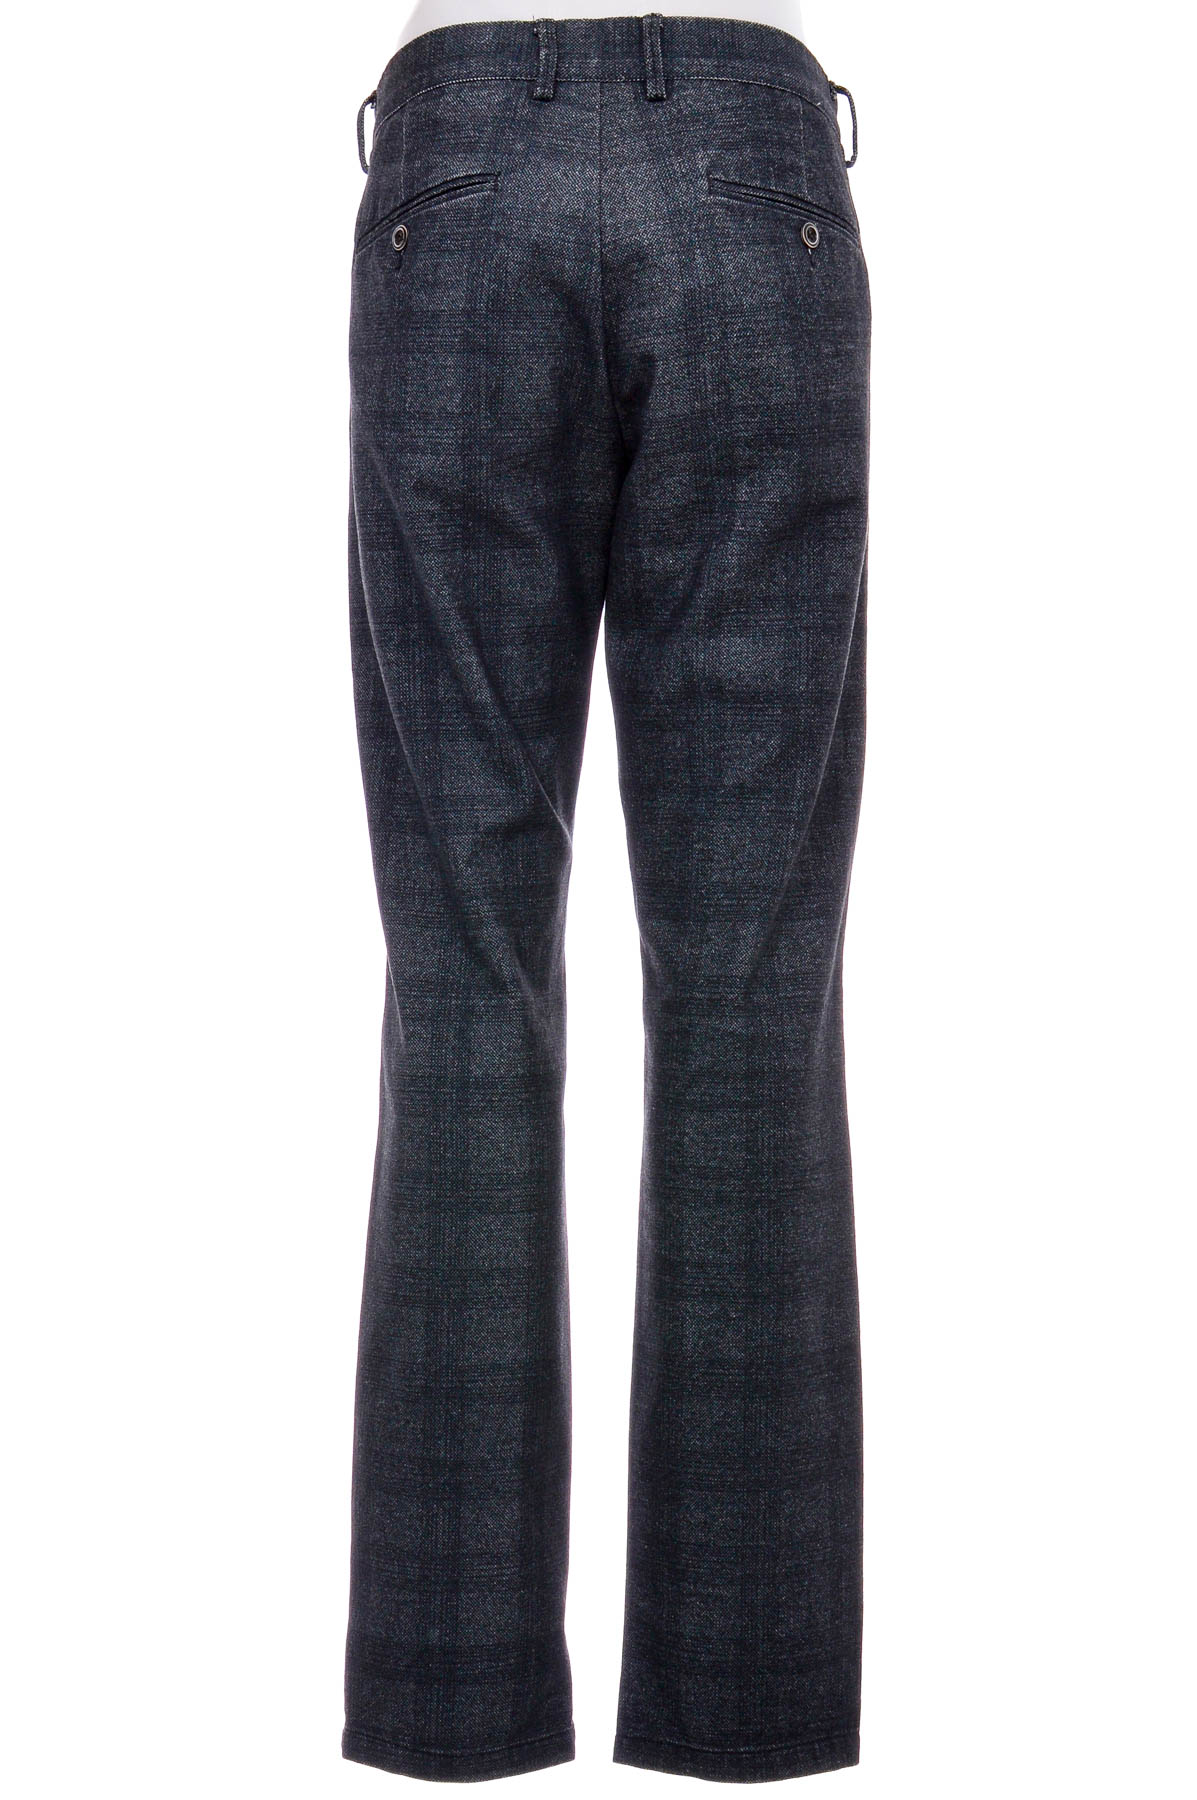 Pantalon pentru bărbați - DEVRED 1902 - 1